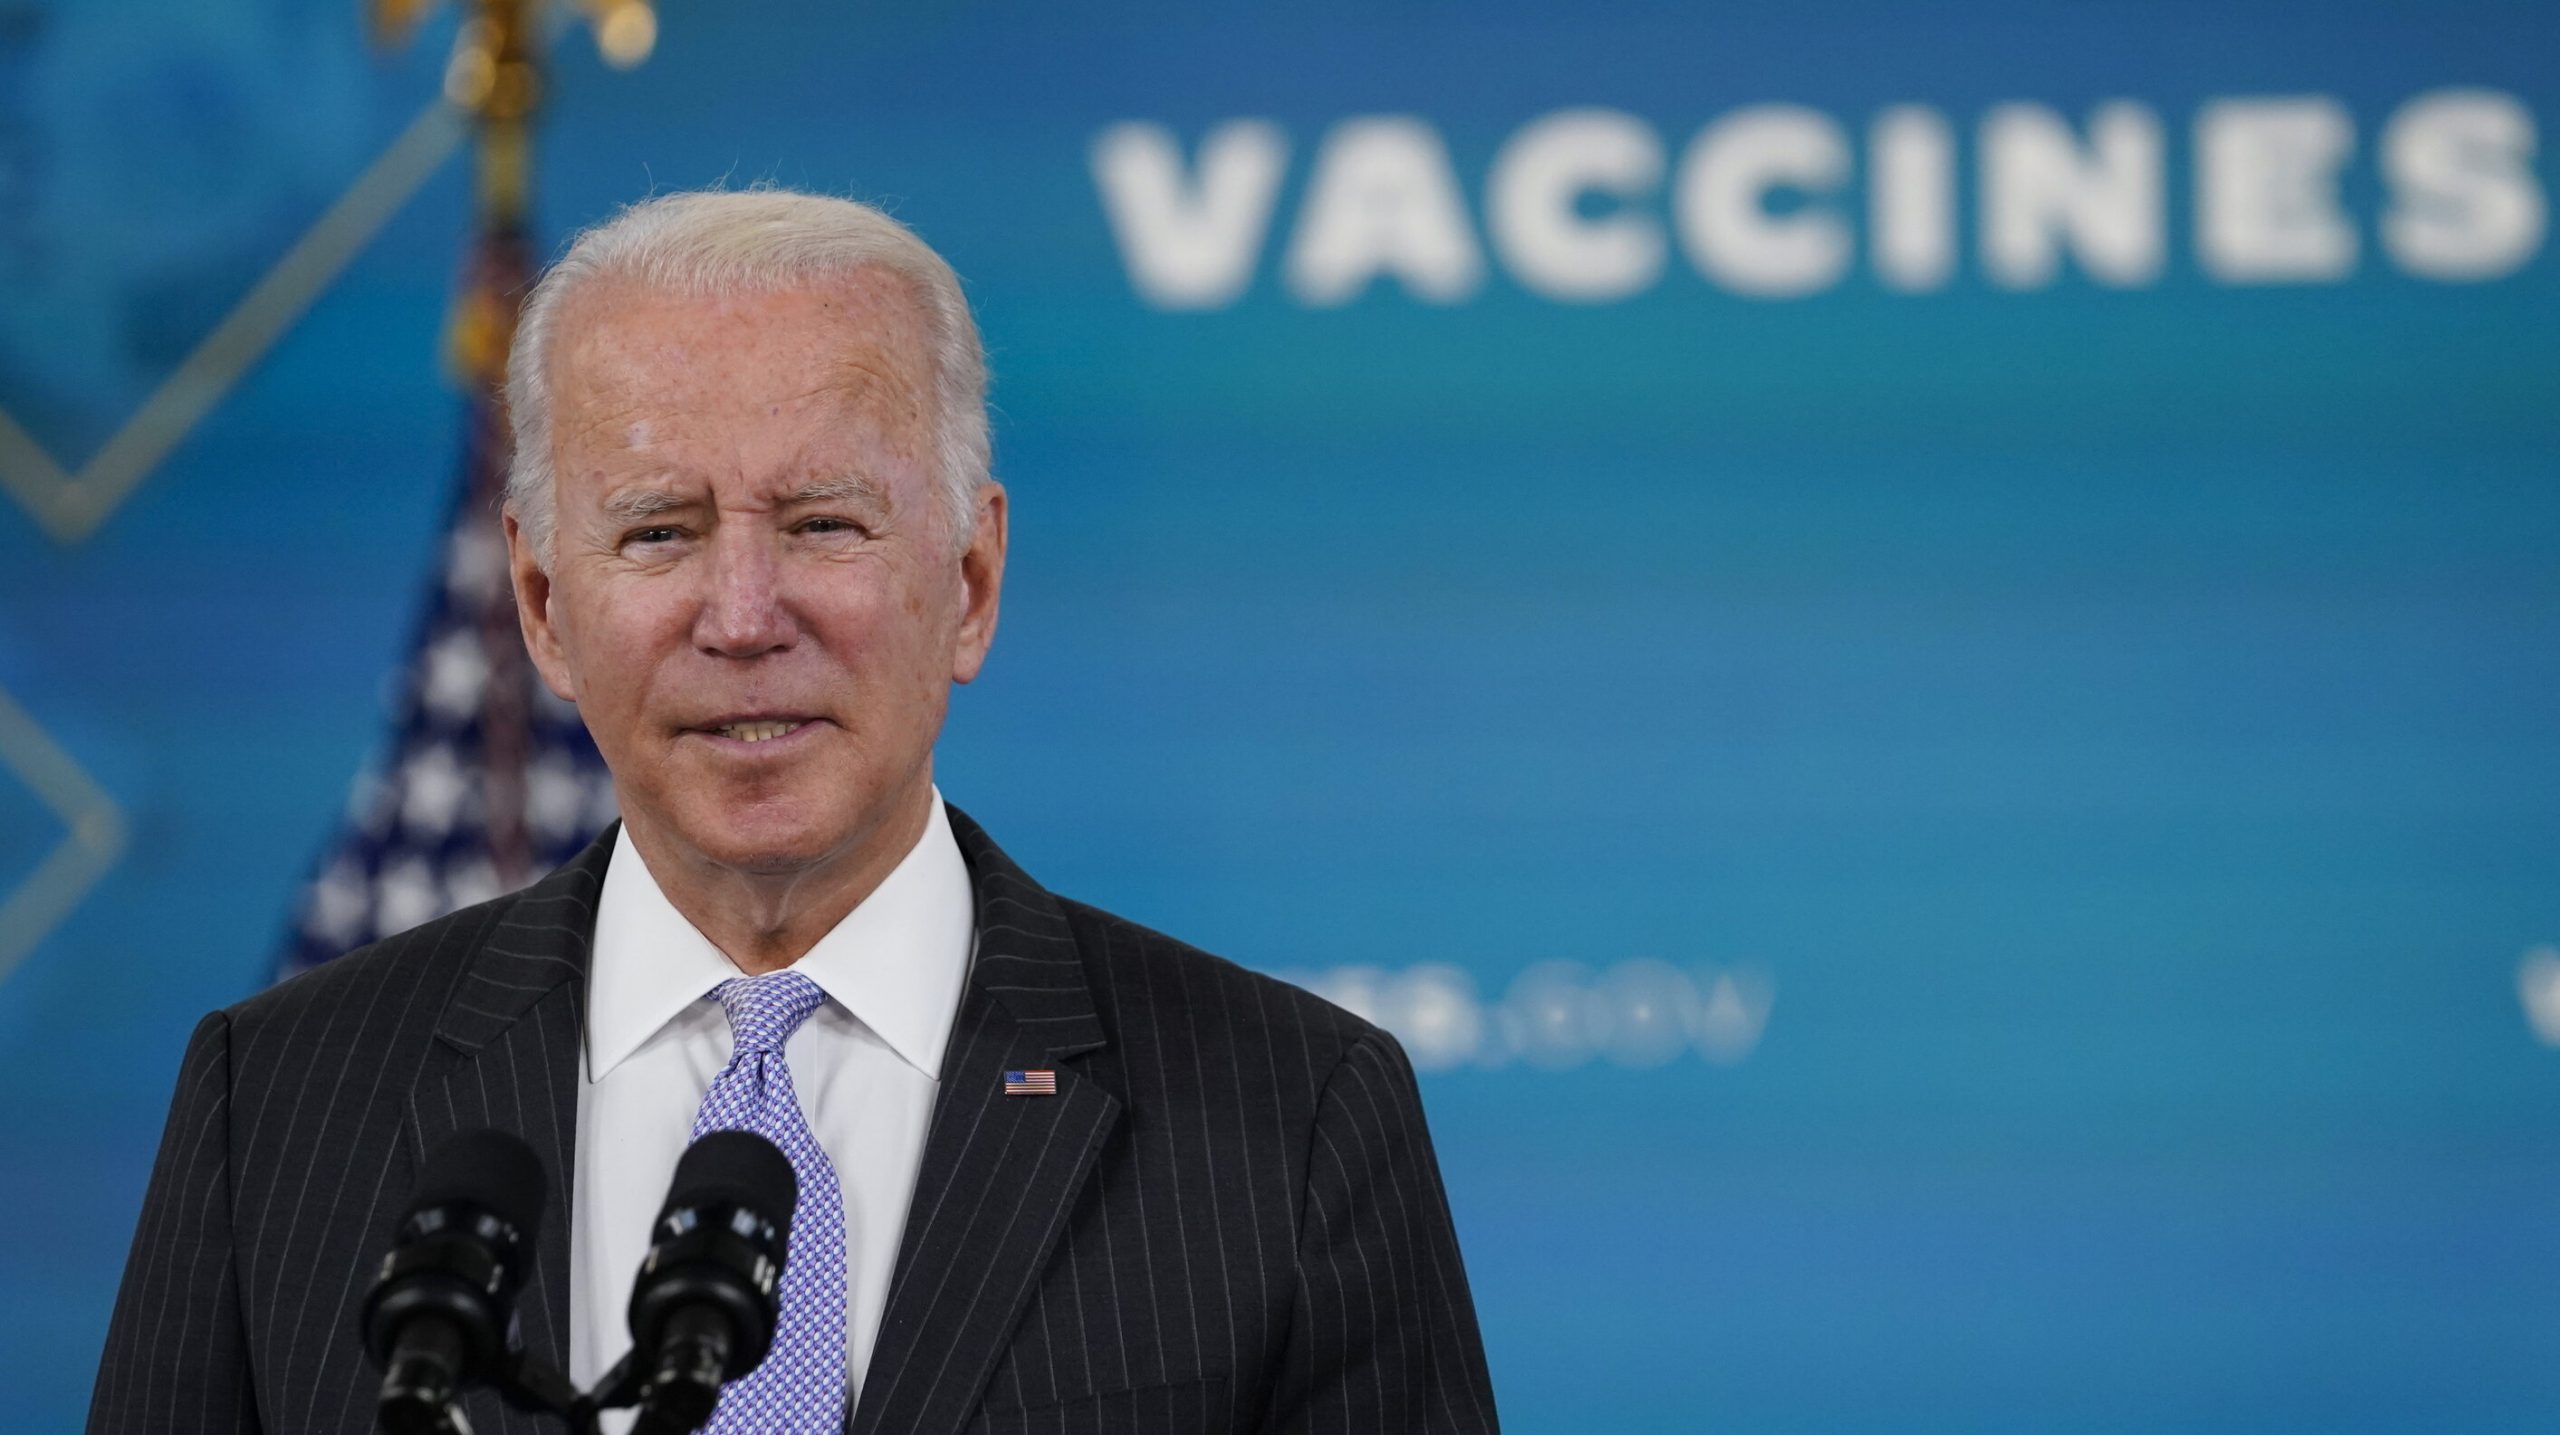 Administrația Biden impune majorității angajaților să se vaccineze până cel târziu pe 4 ianuarie 2022